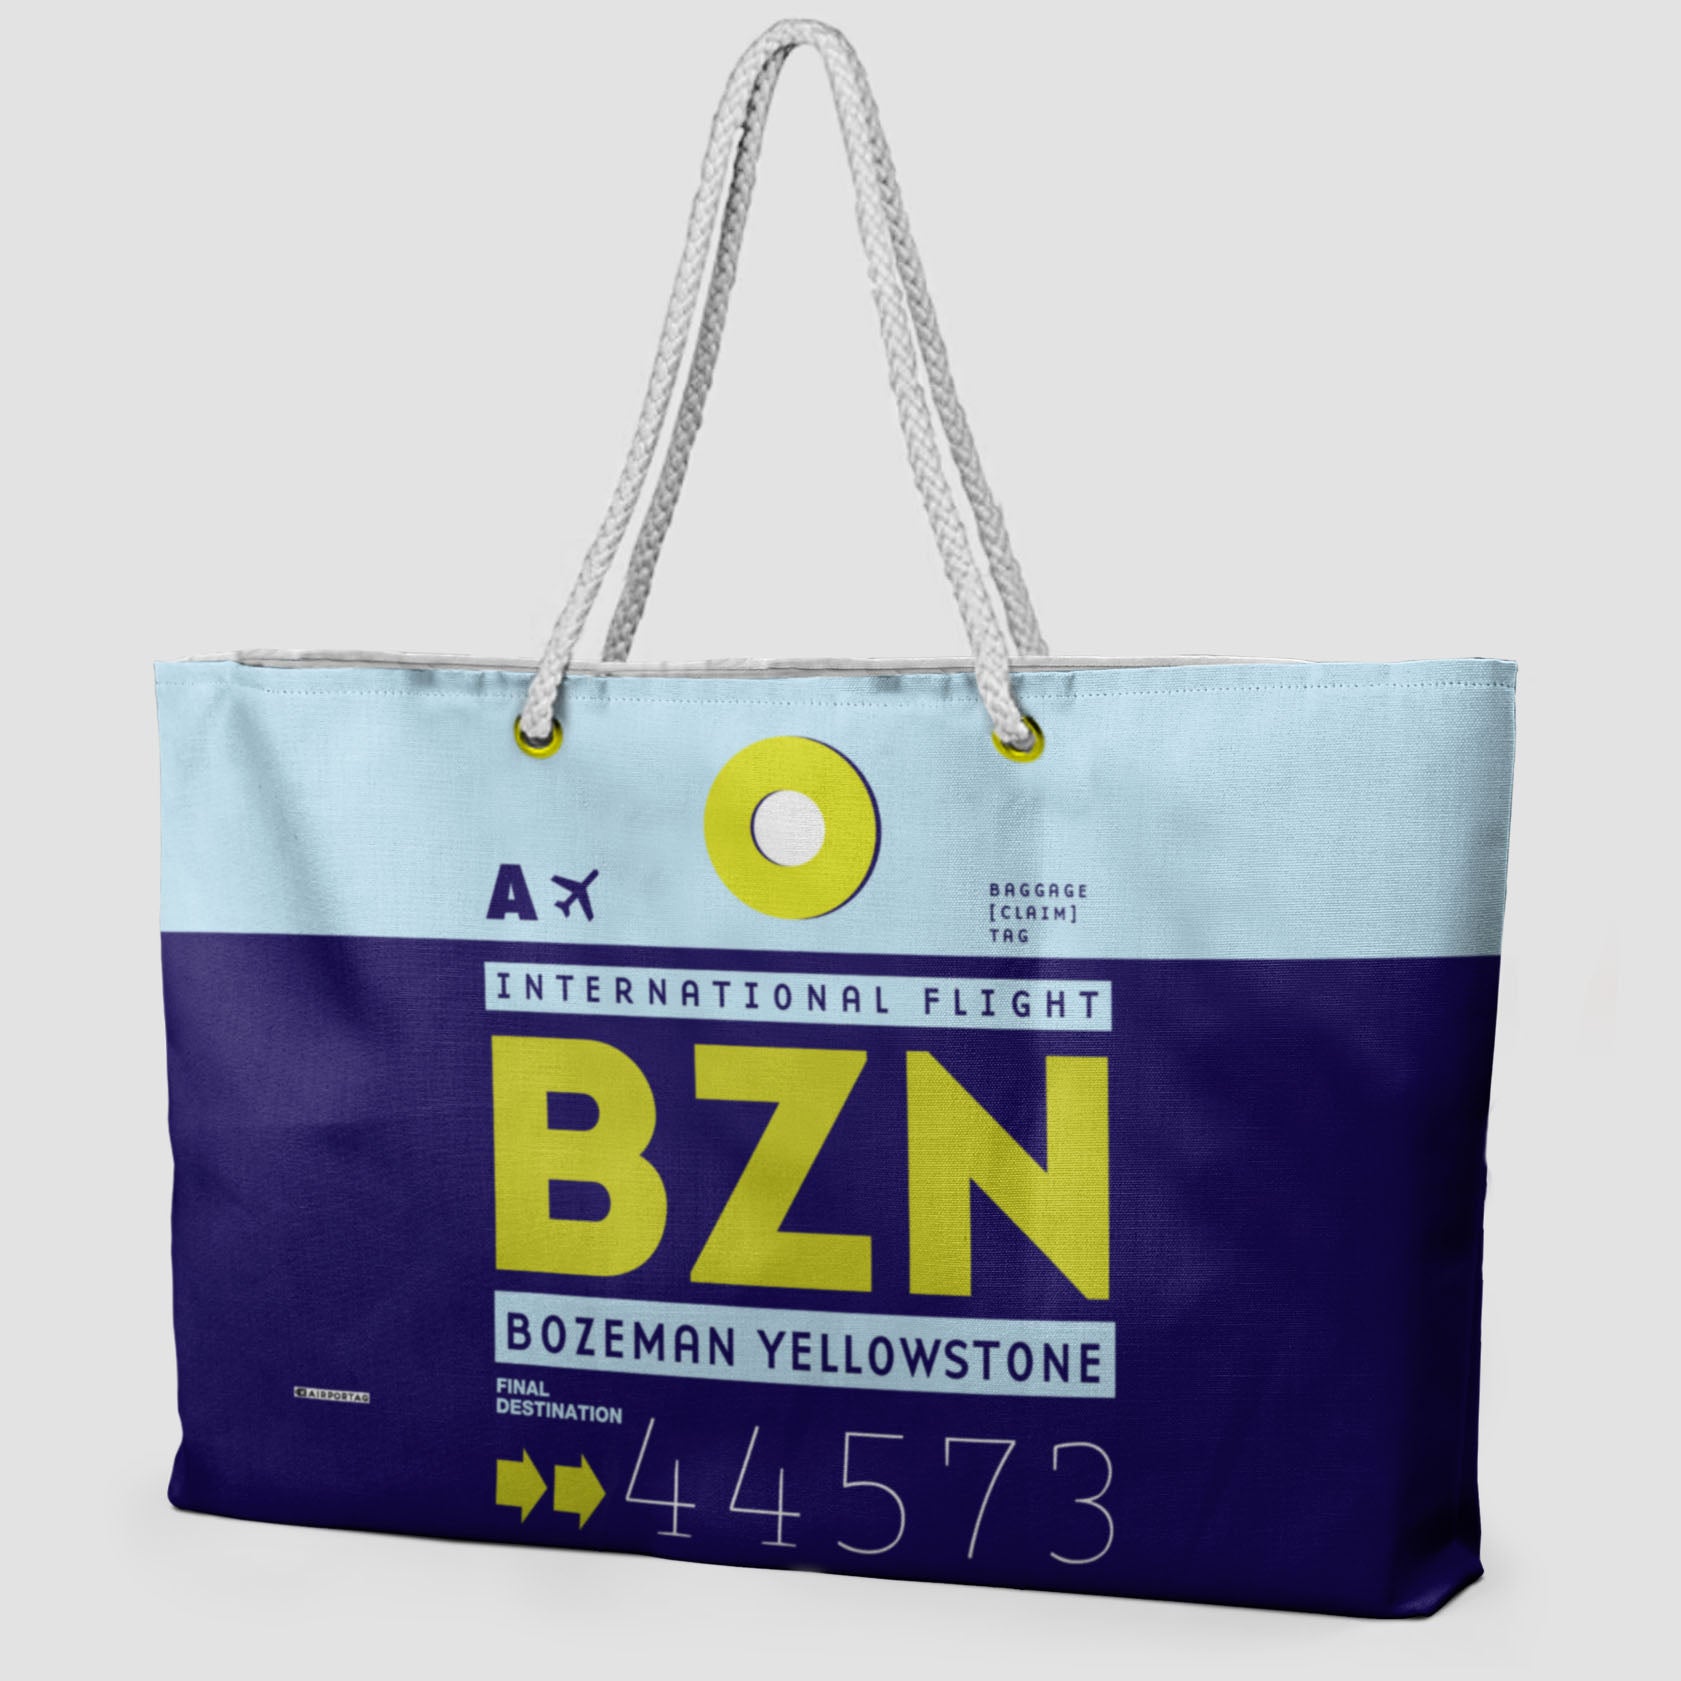 BZN - Weekender Bag - Airportag